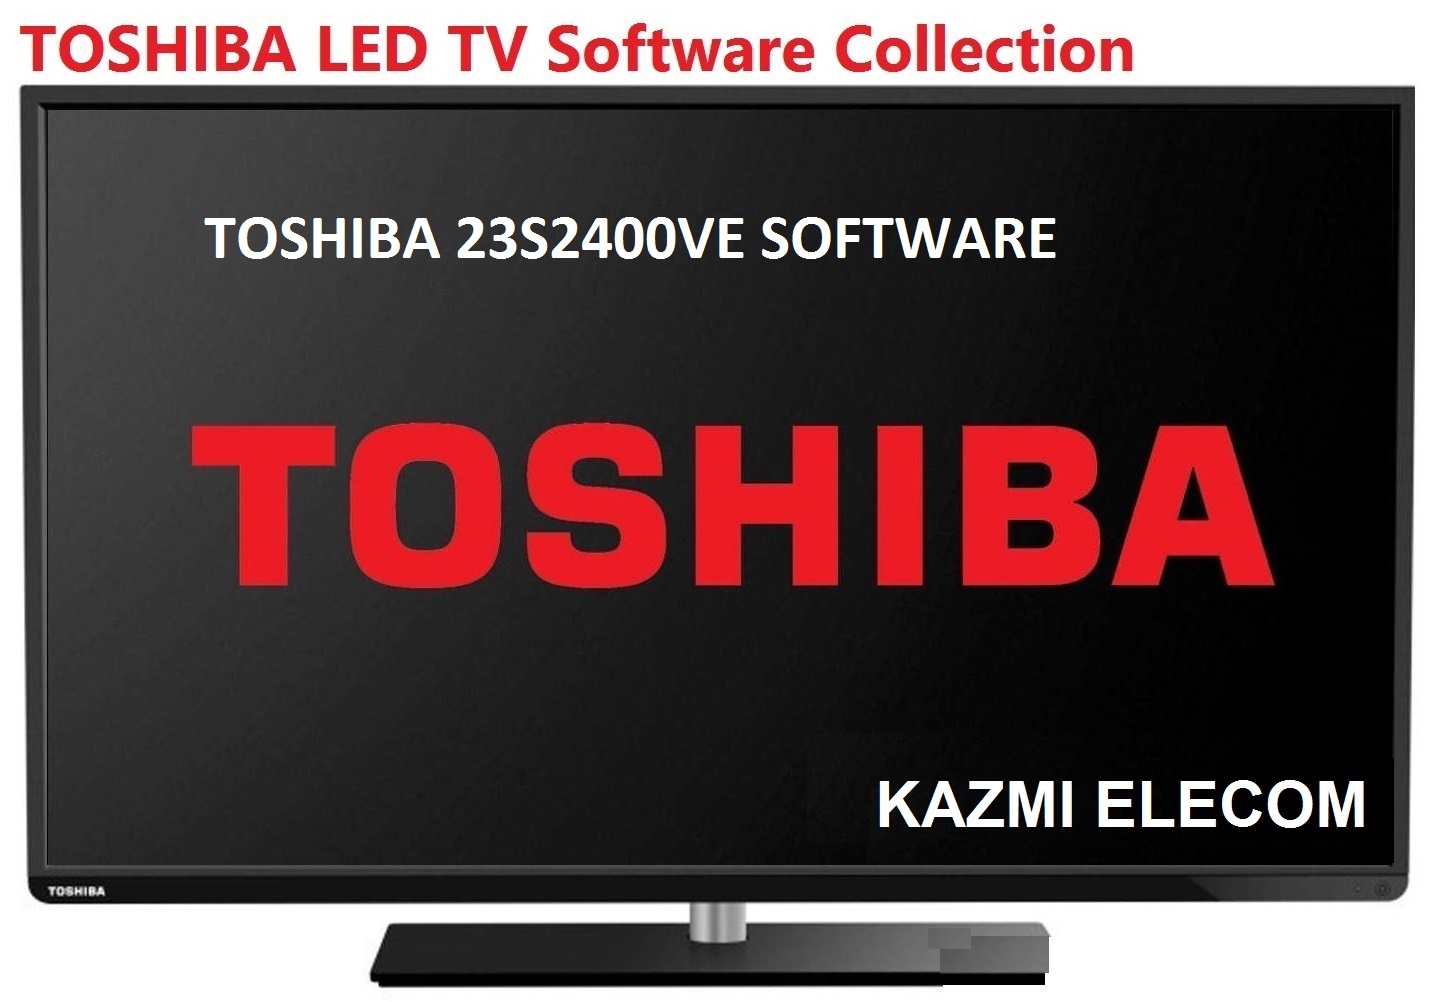 Toshiba 23S2400Ve